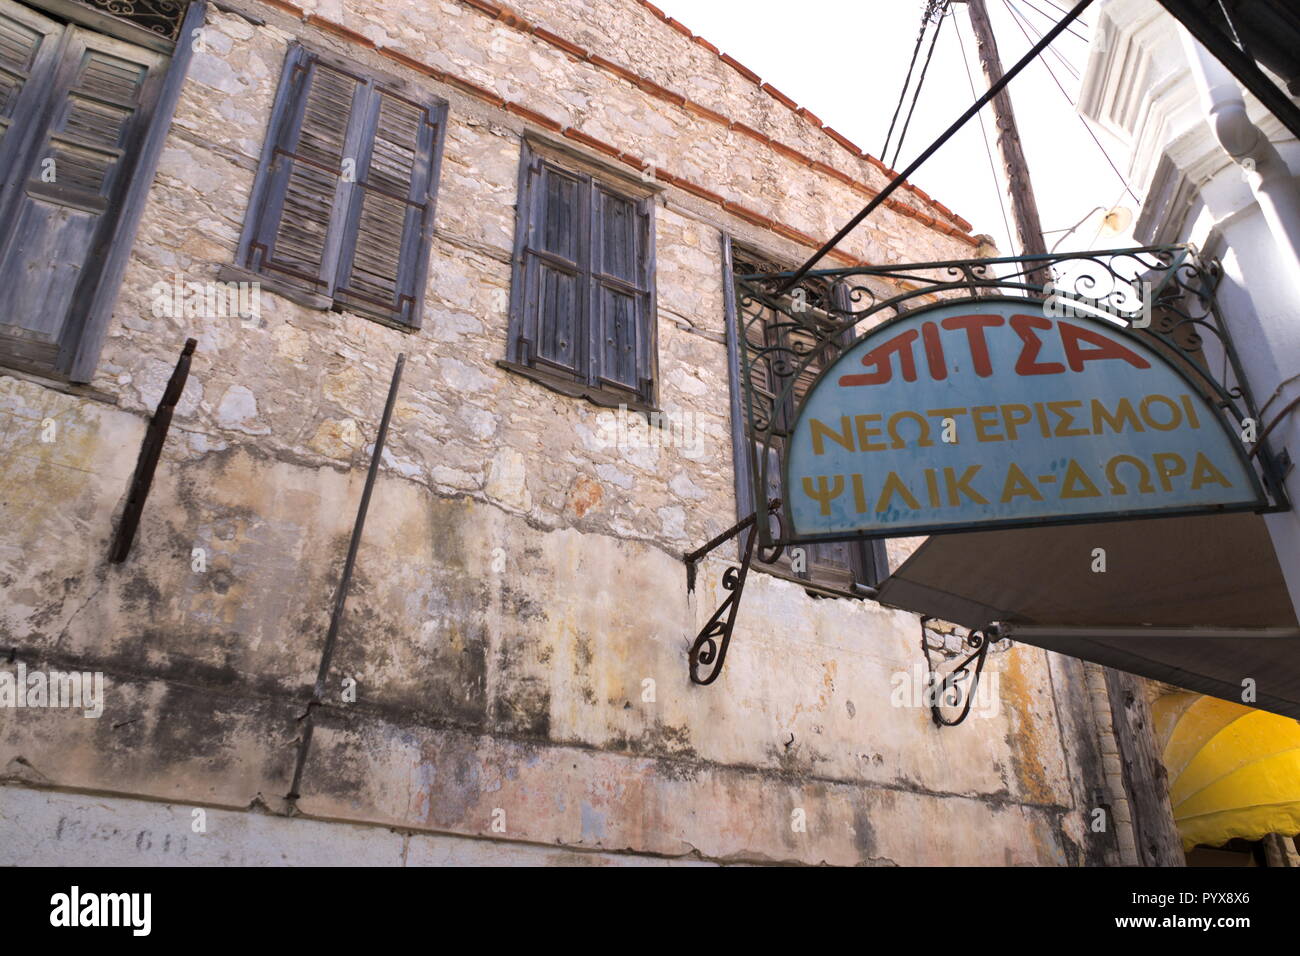 Vista di vecchi edifici nella splendida isola greca di Symi. Un segno di pubblicità vecchio stile in un elegante telaio di metallo, e un edificio vecchio e semplice Foto Stock